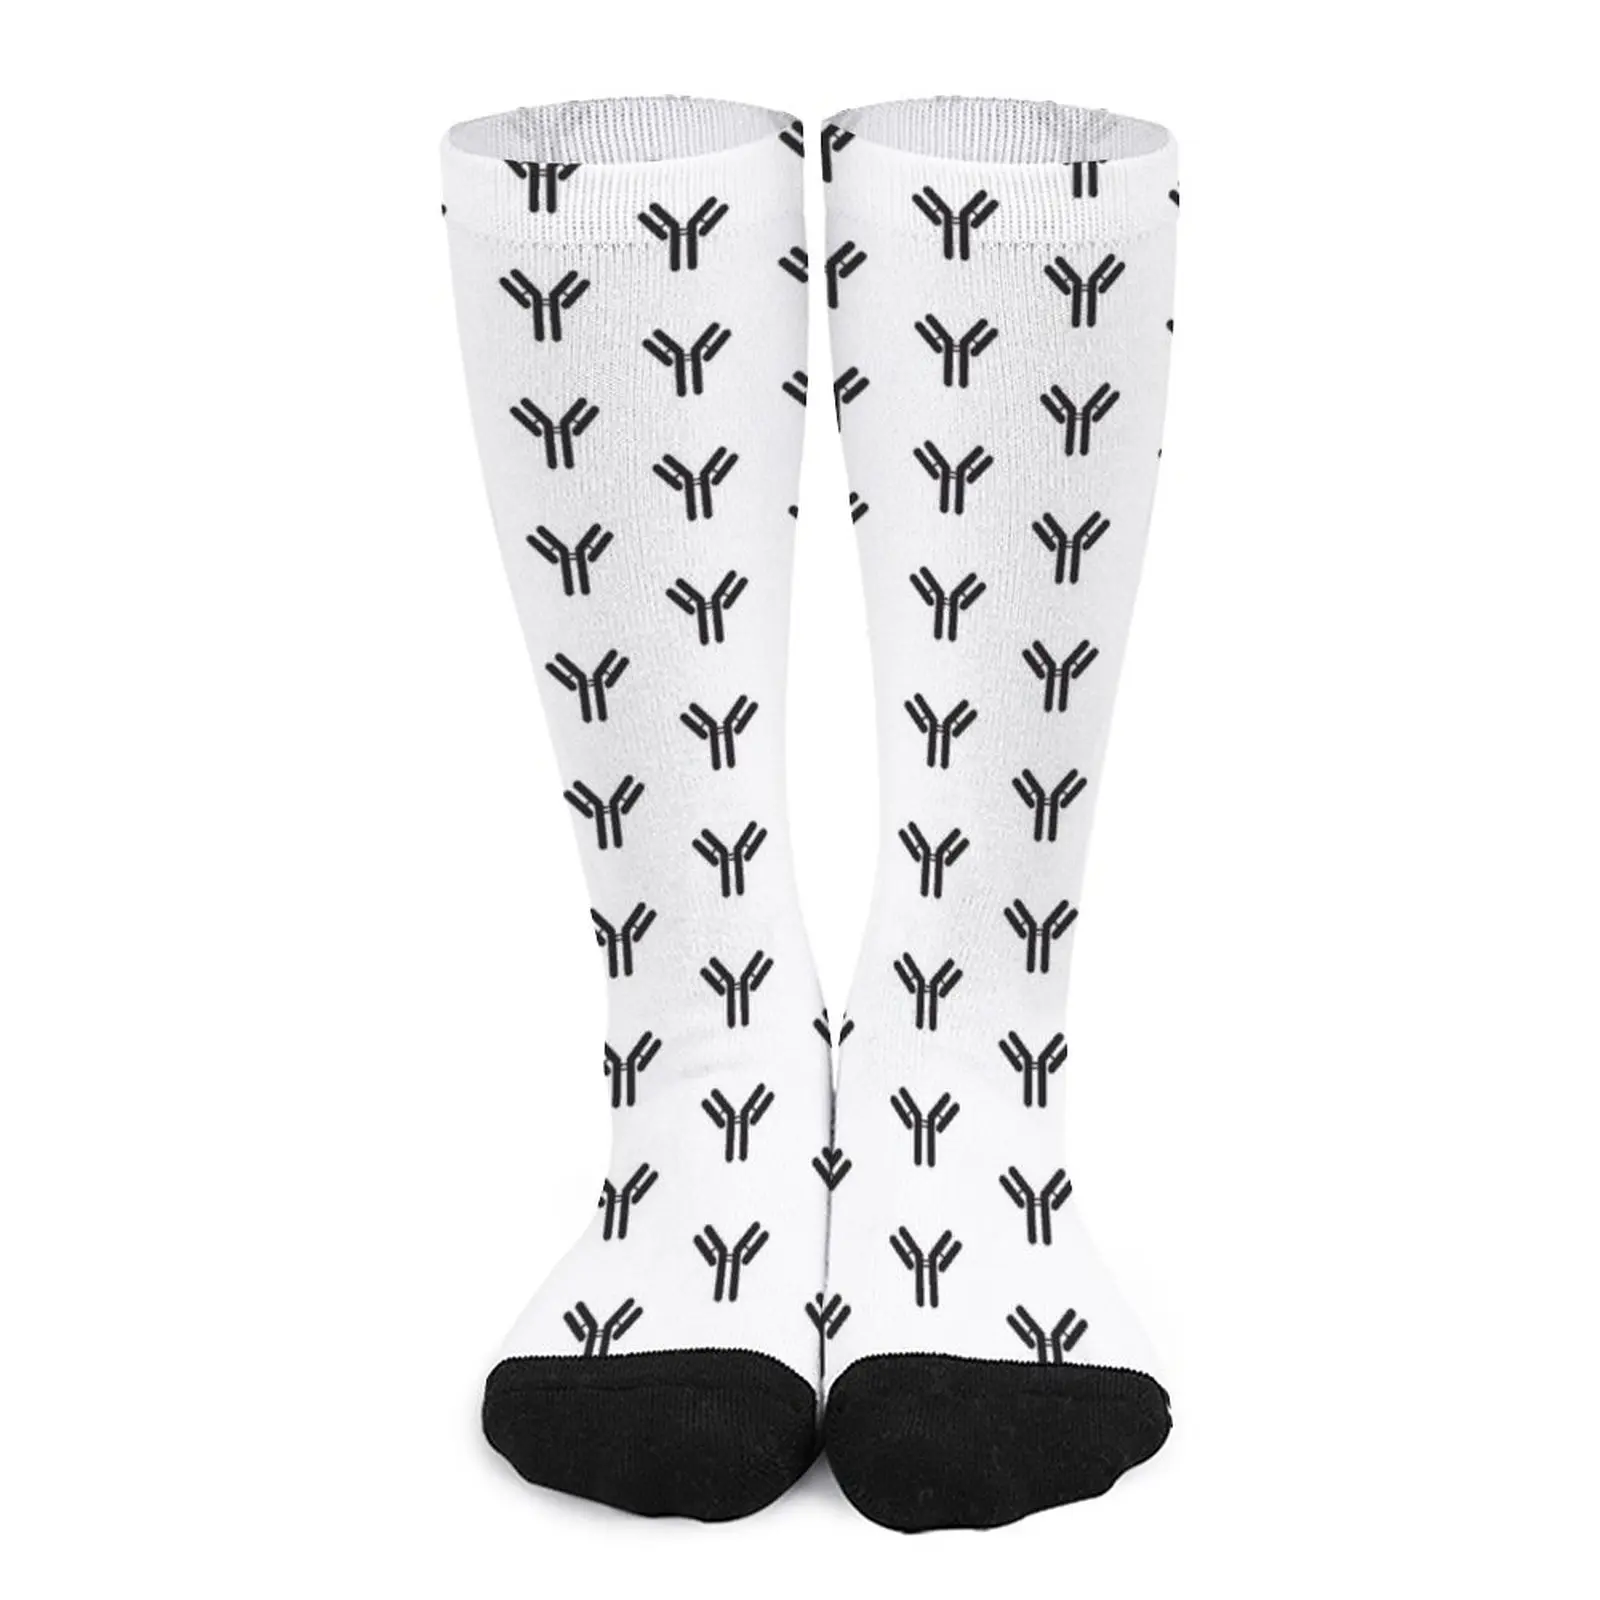 Antibody Socks valentines day gift for boyfriend non-slip soccer stockings